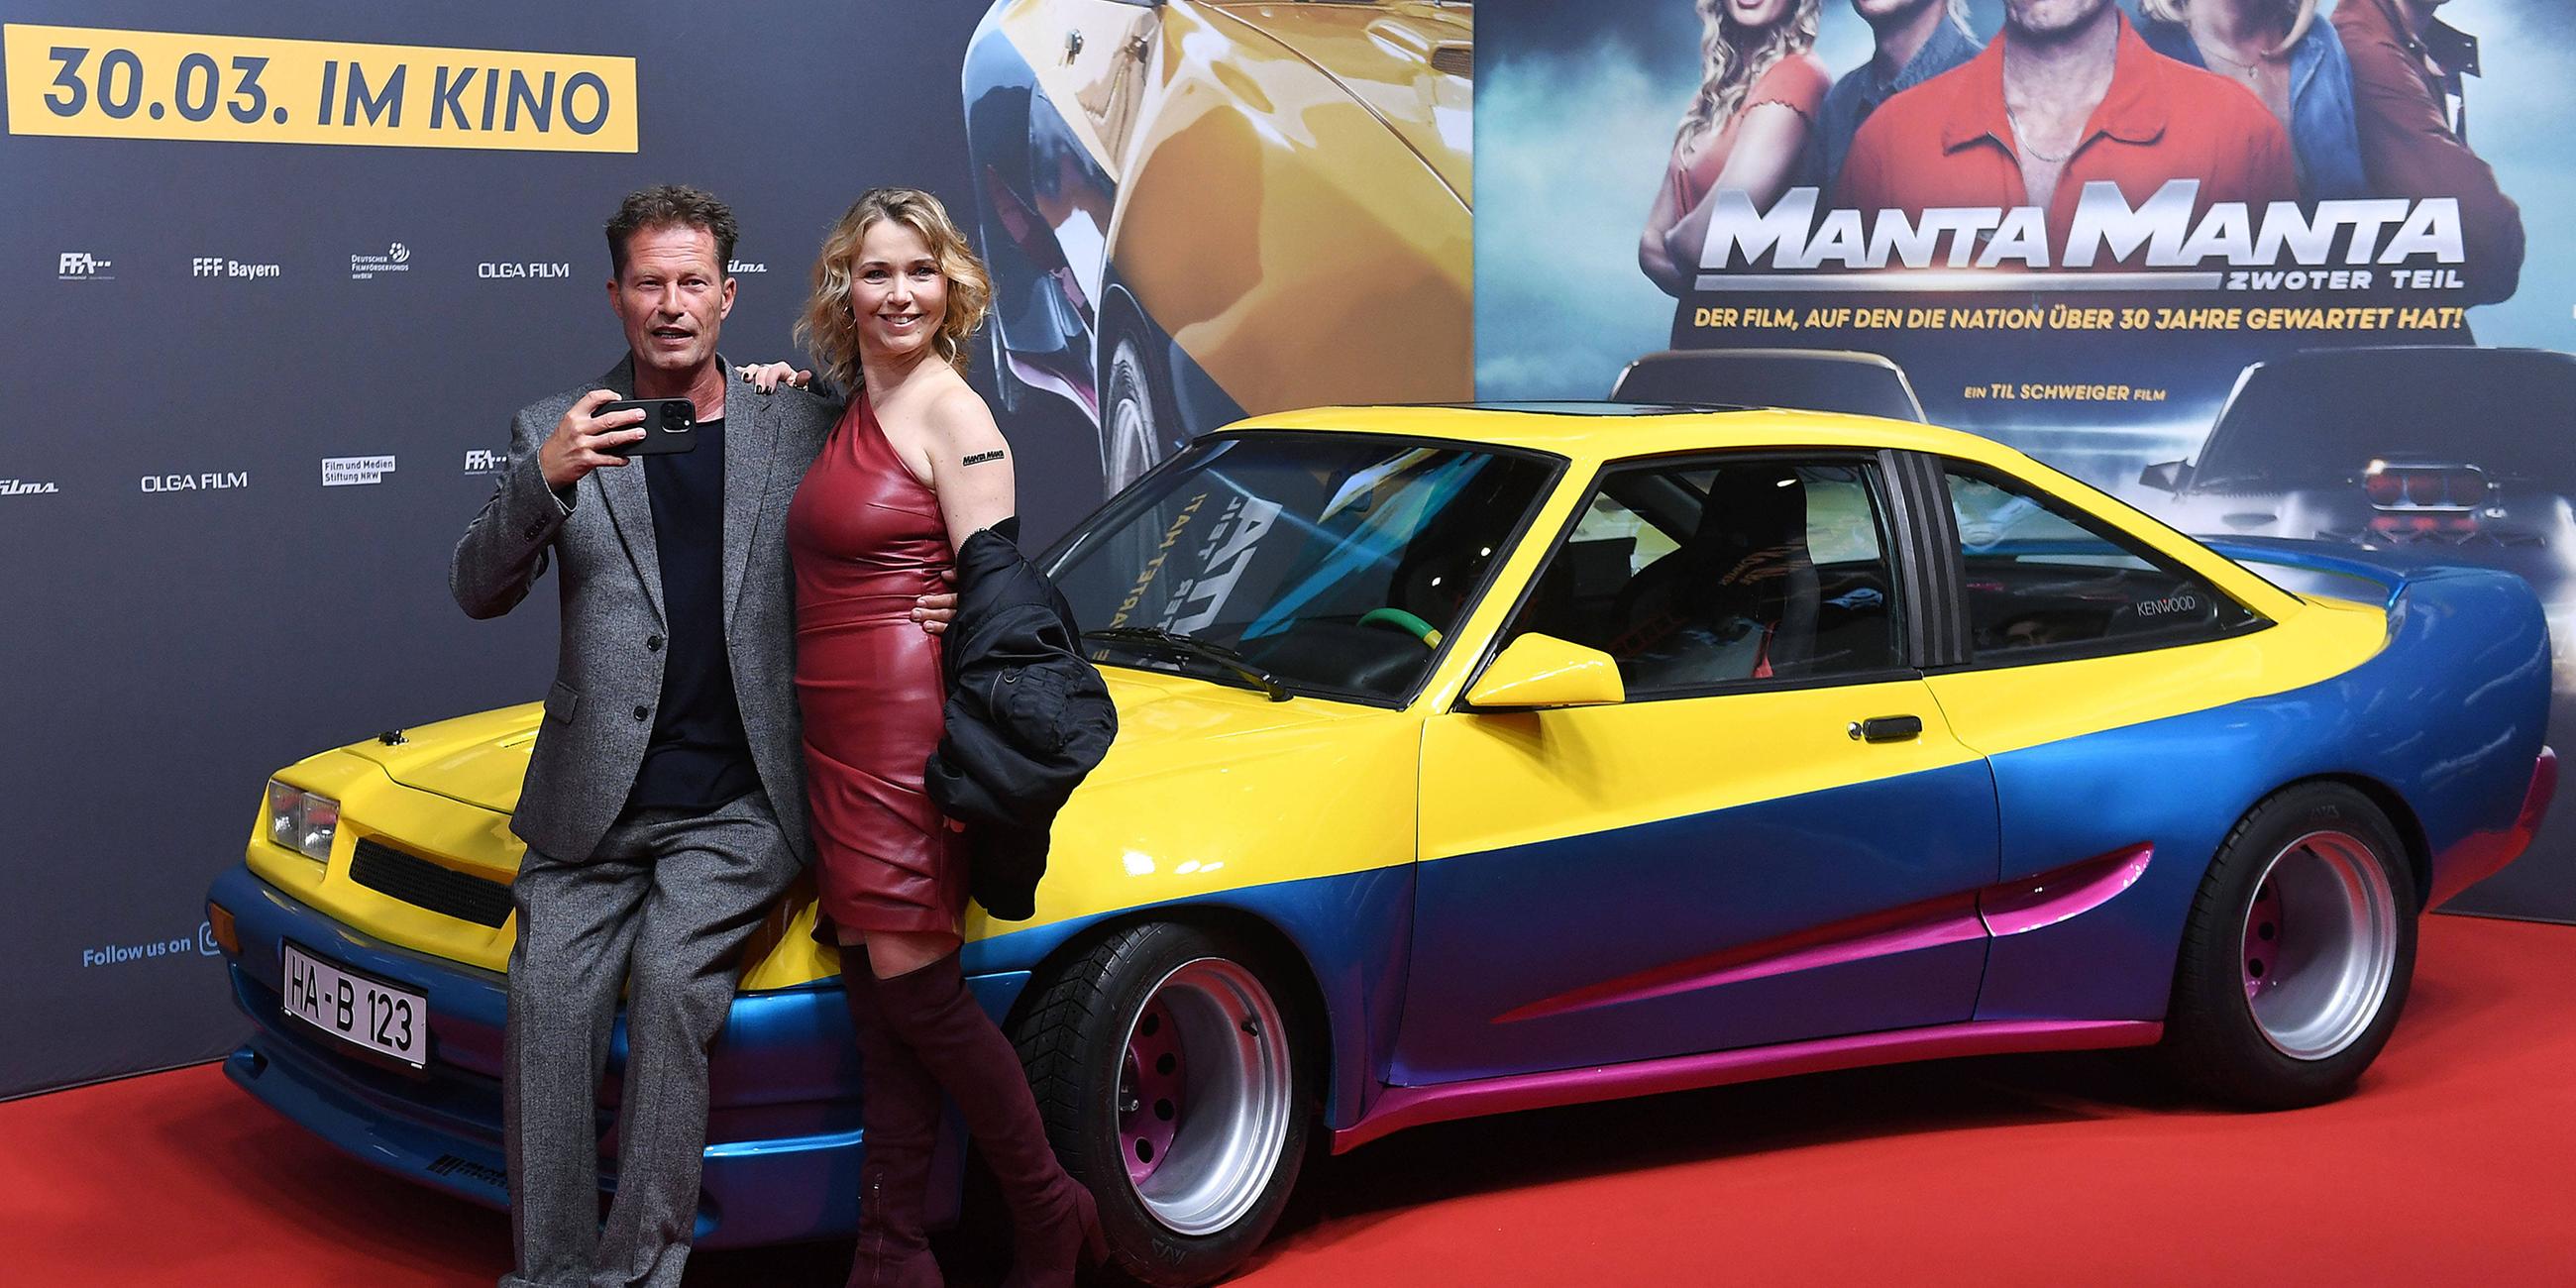 Till Schweiger und Tina Ruland zur Premiere des Films Manta Manta - Zwoter Teil im Cinedom in Köln (März 2023)